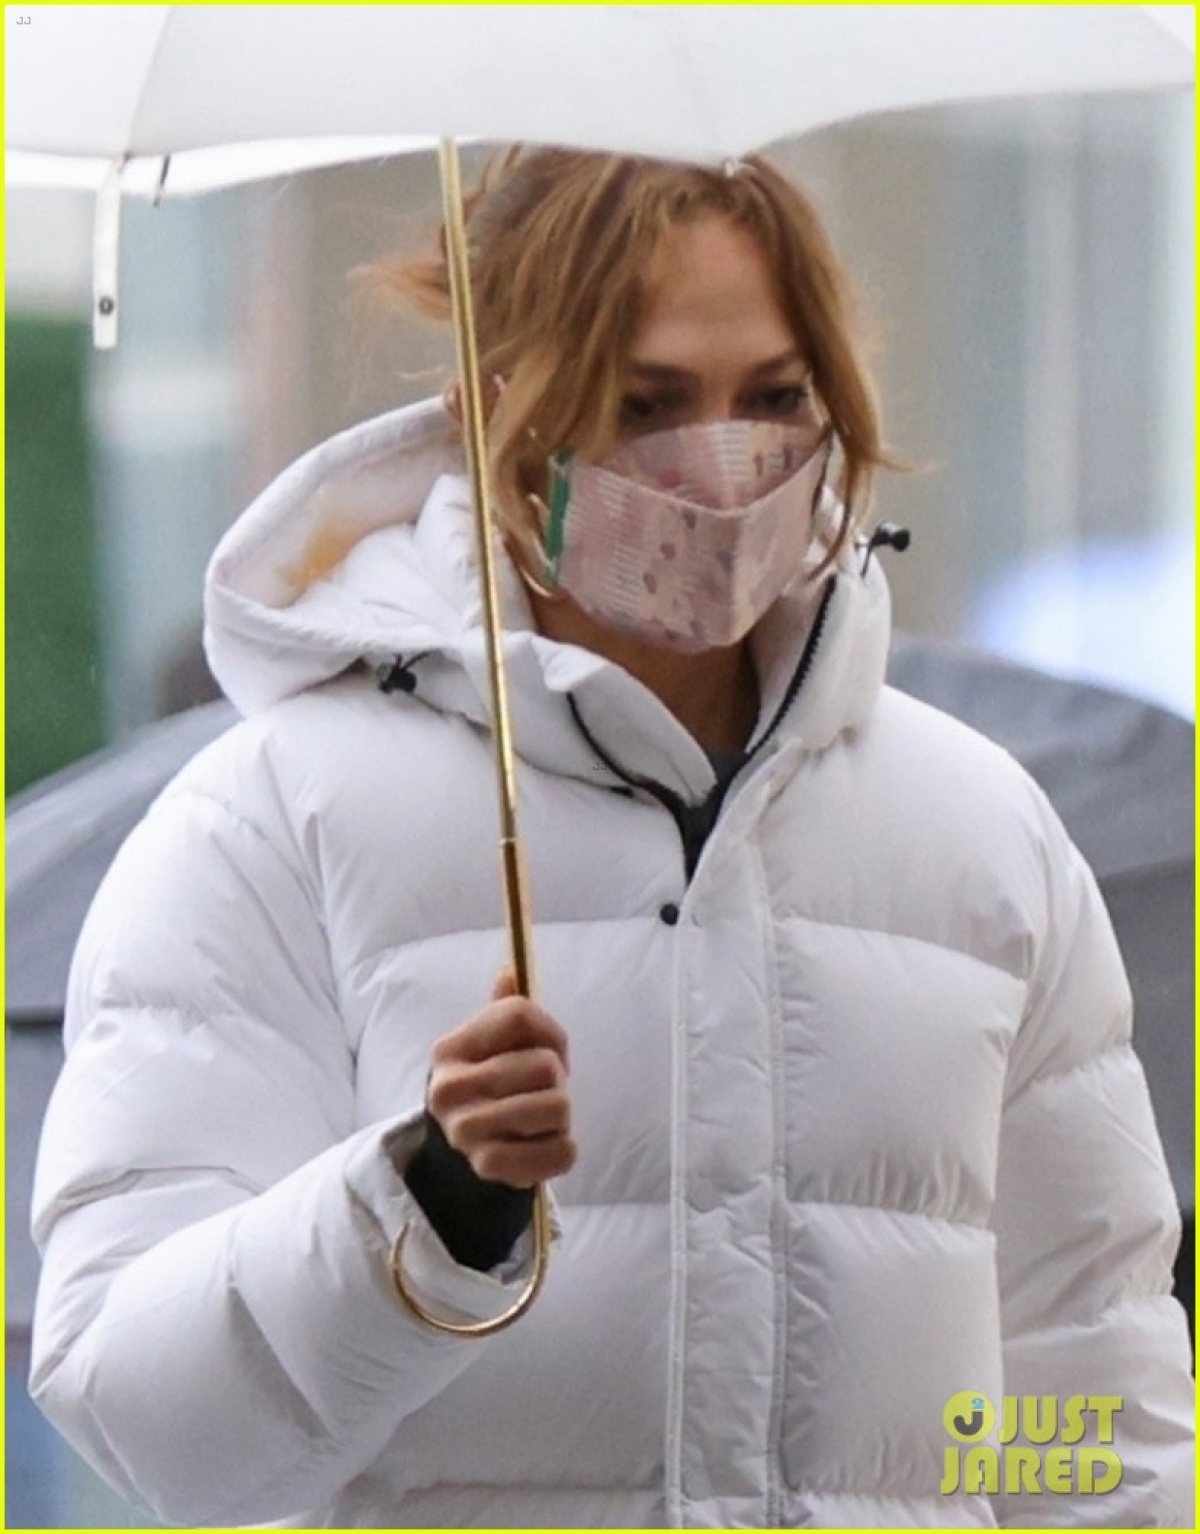 Mặc dù để bặt mộc, ăn vận có phần xuề xòa nhưng Jennifer Lopez vẫn gây chú ý nhờ sắc vóc nổi bật và thần thái quyến rũ